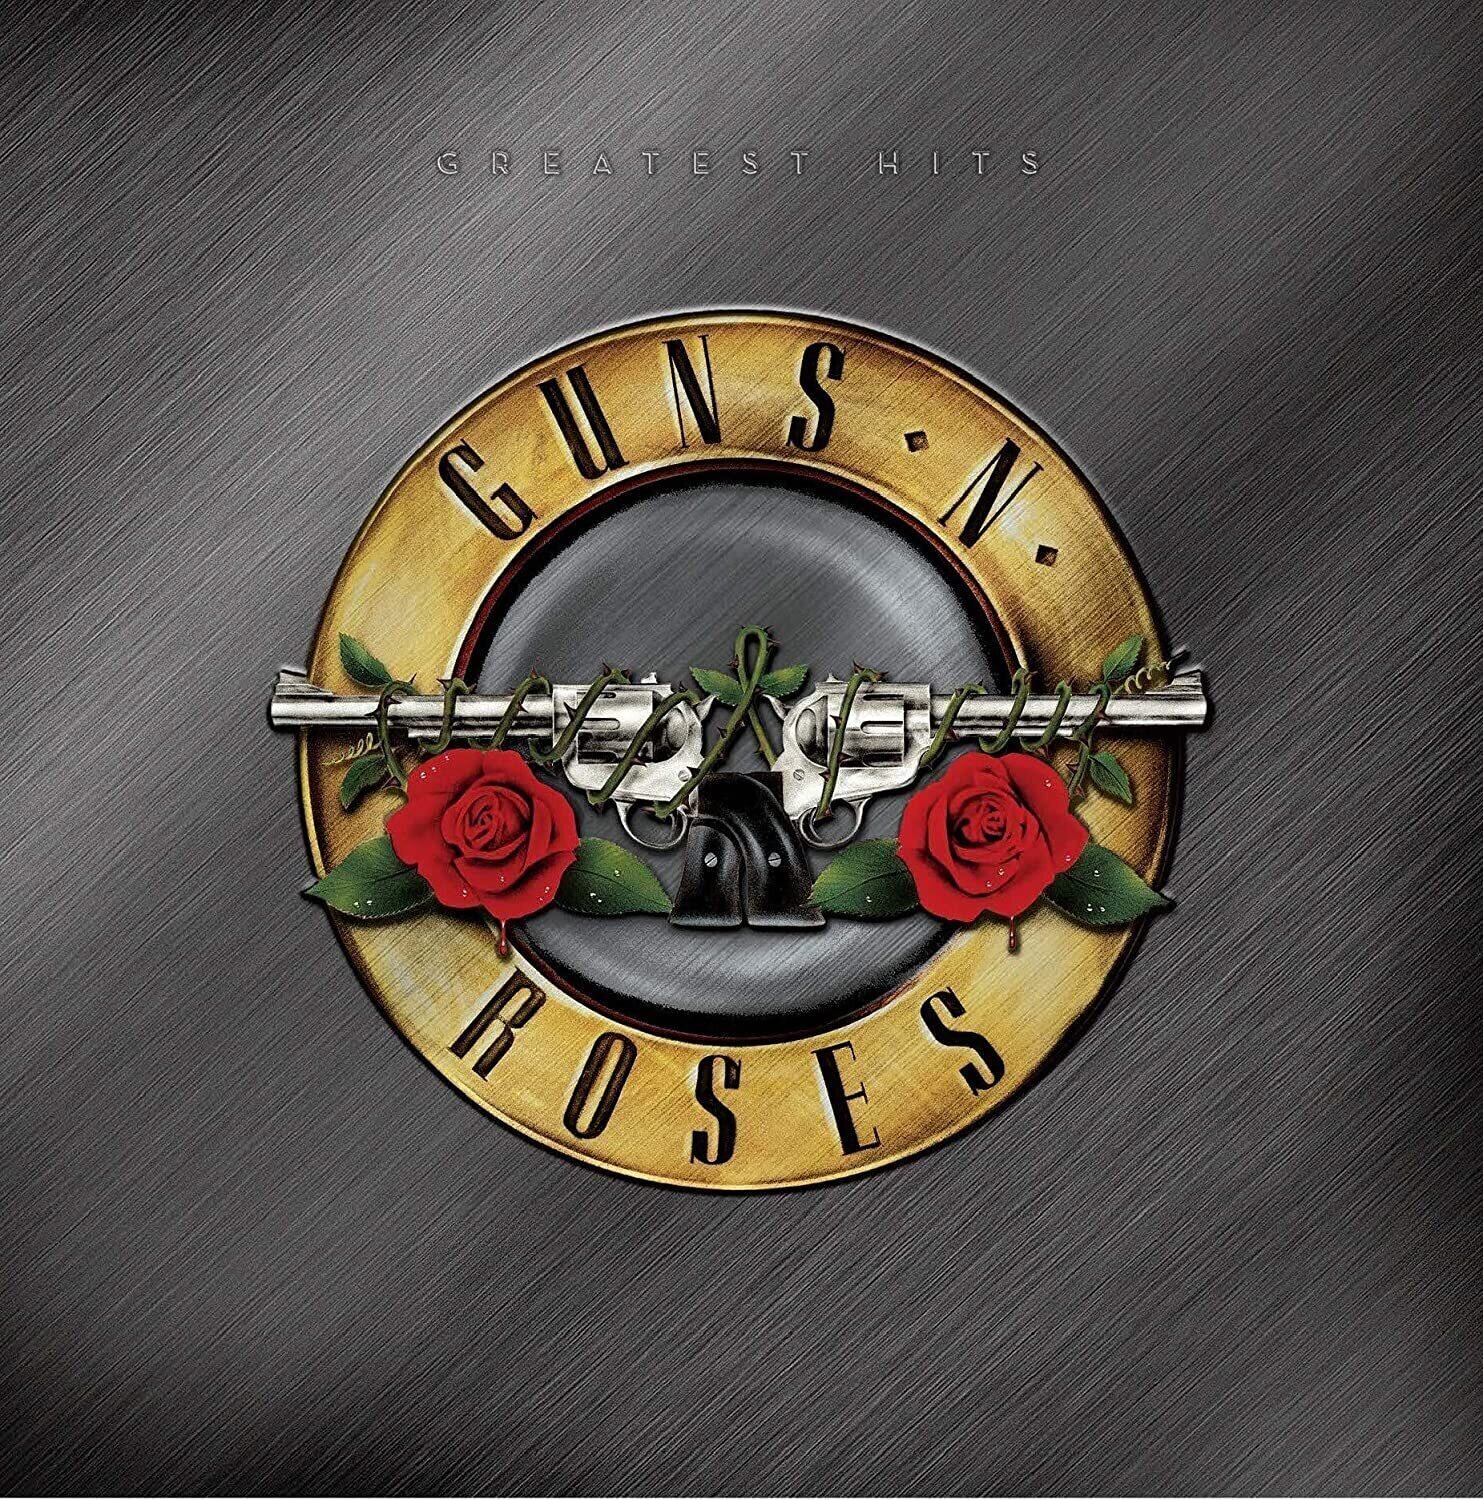 Δίσκος LP Guns N' Roses - Greatest Hits (2 LP) (Coloured) (180g)